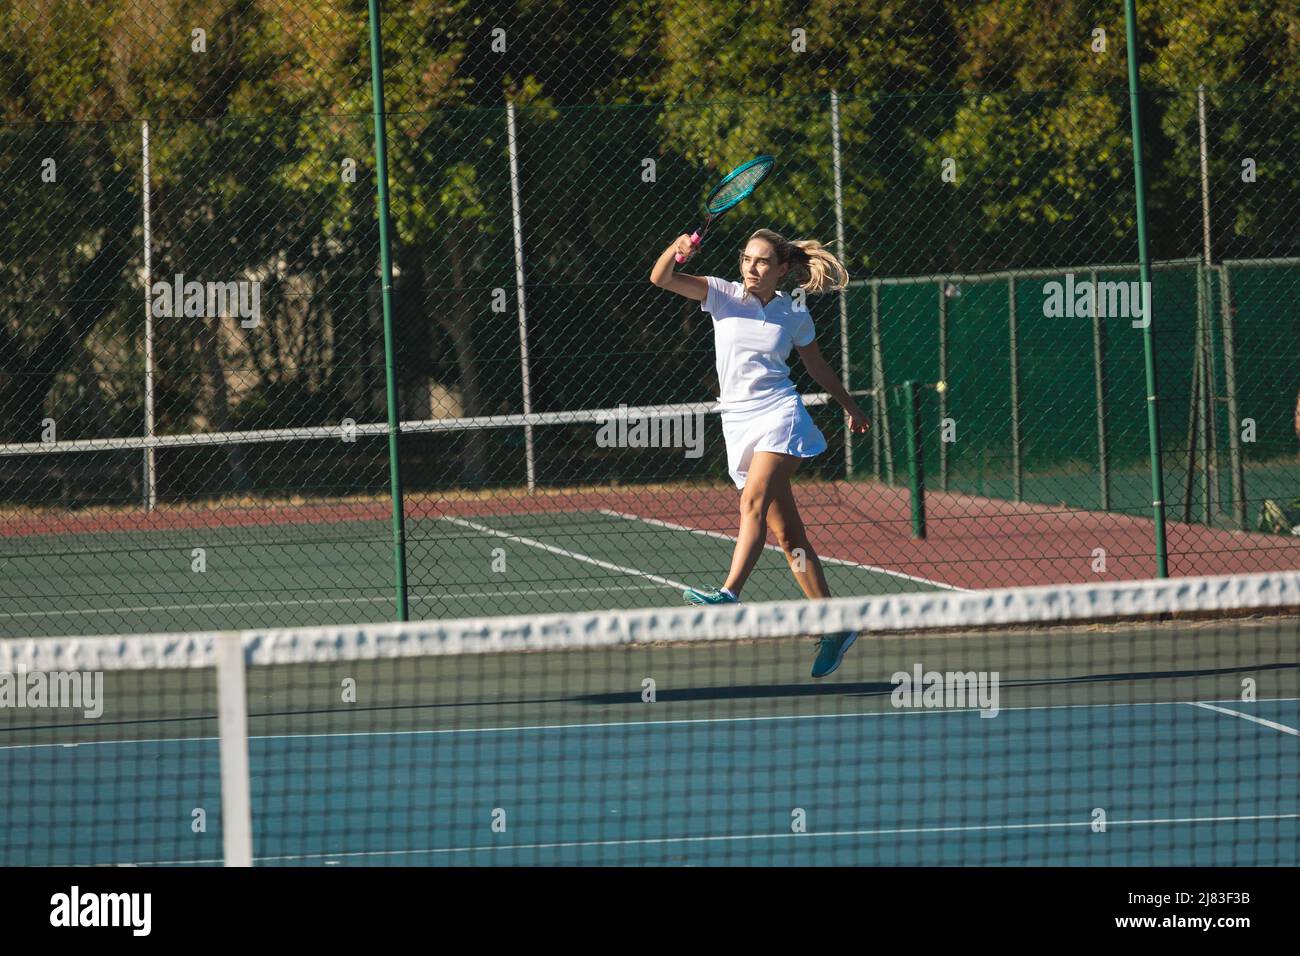 Une jeune femme de race blanche sautant en jouant au tennis sur le terrain par beau temps Banque D'Images